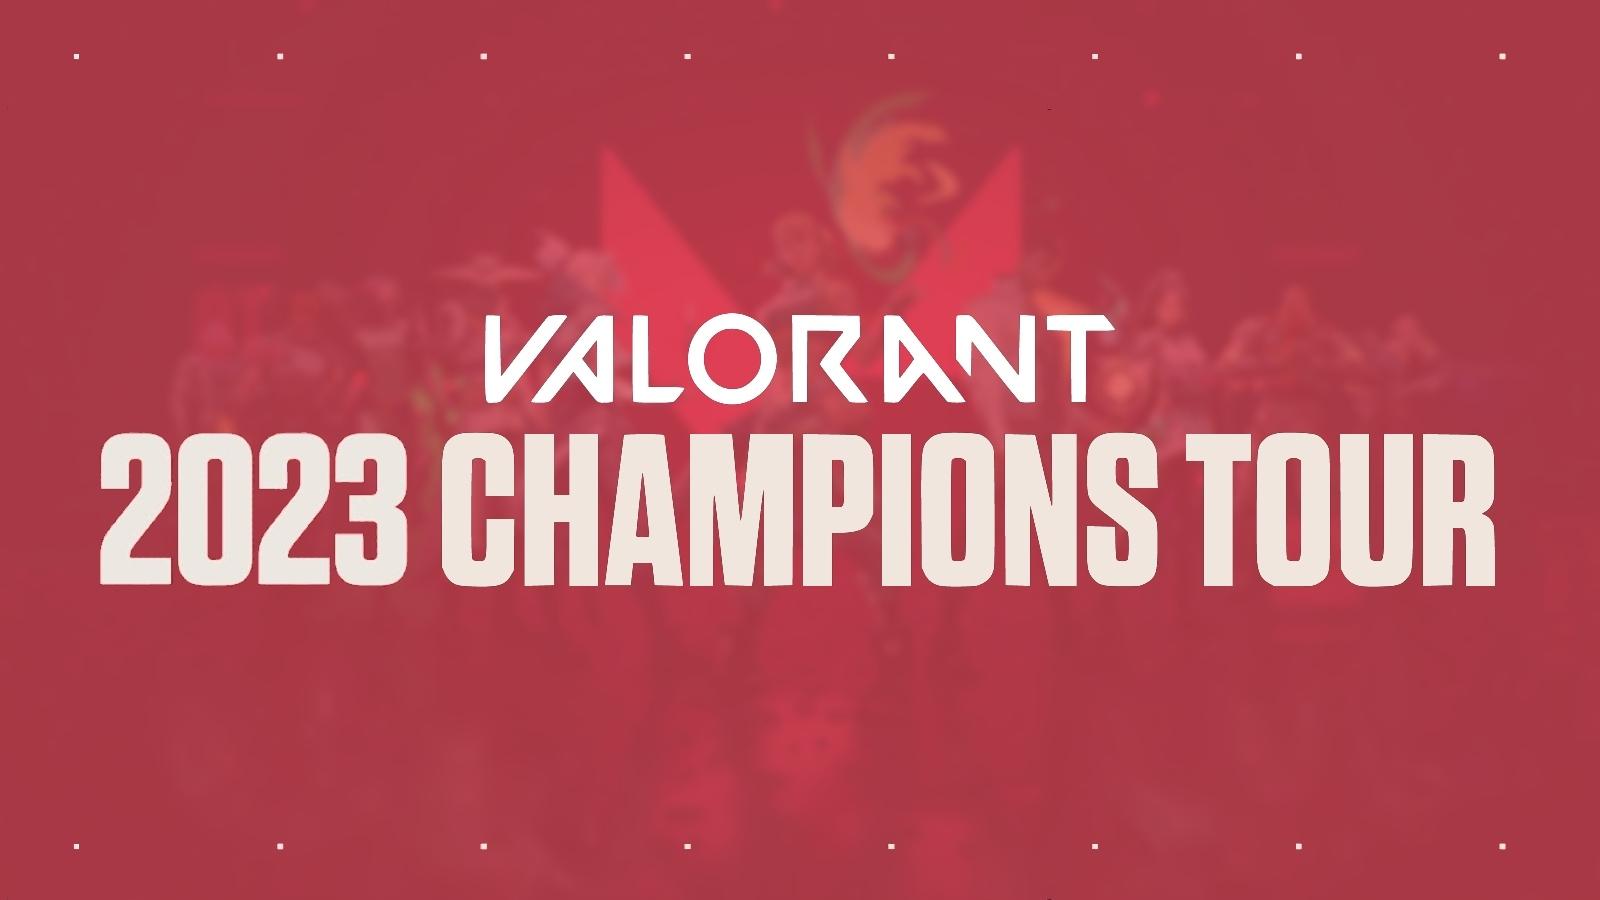 Valorant 2021 Champions Tour graphic